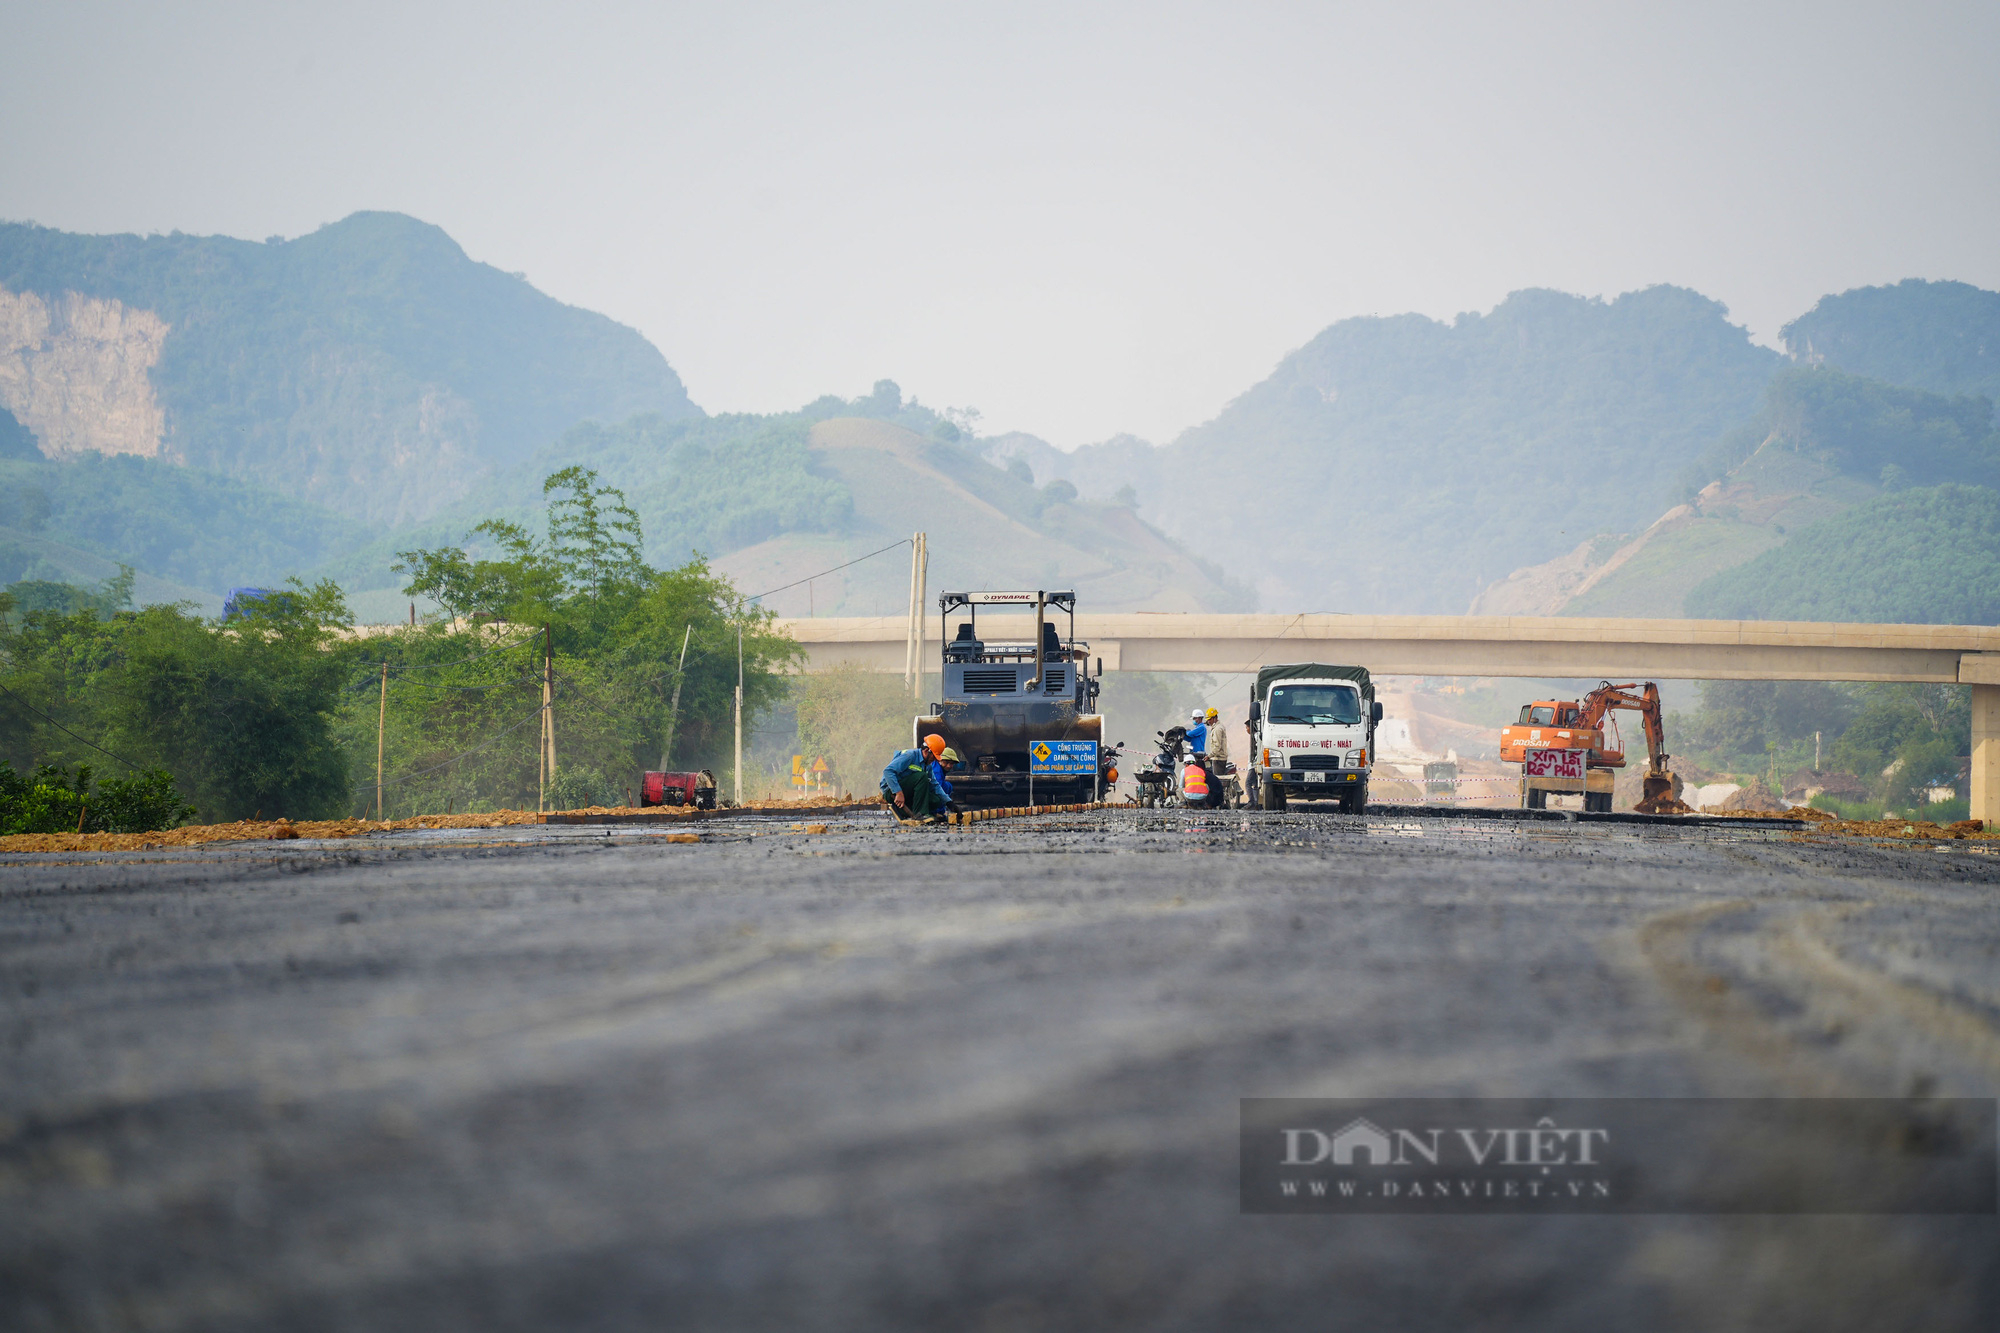 Hơn 200 m thảm nhựa đường đầu tiên tại cao tốc Bắc Nam đoạn Ninh Bình - Thanh Hoá - Ảnh 4.